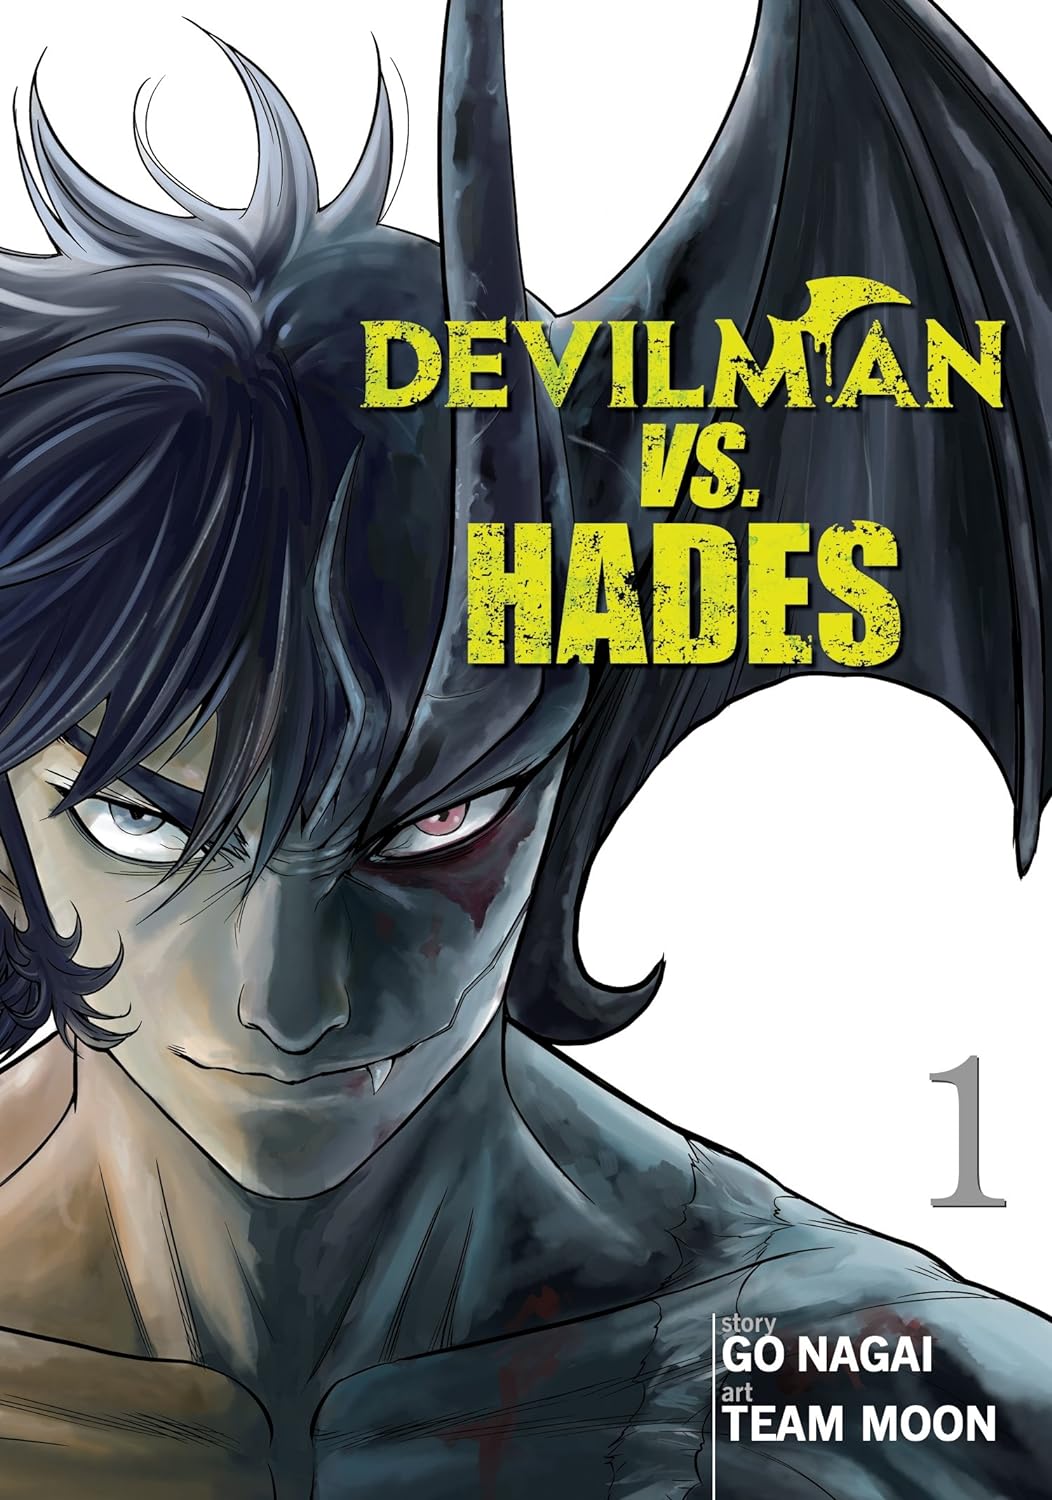 Devilman vs. Hades